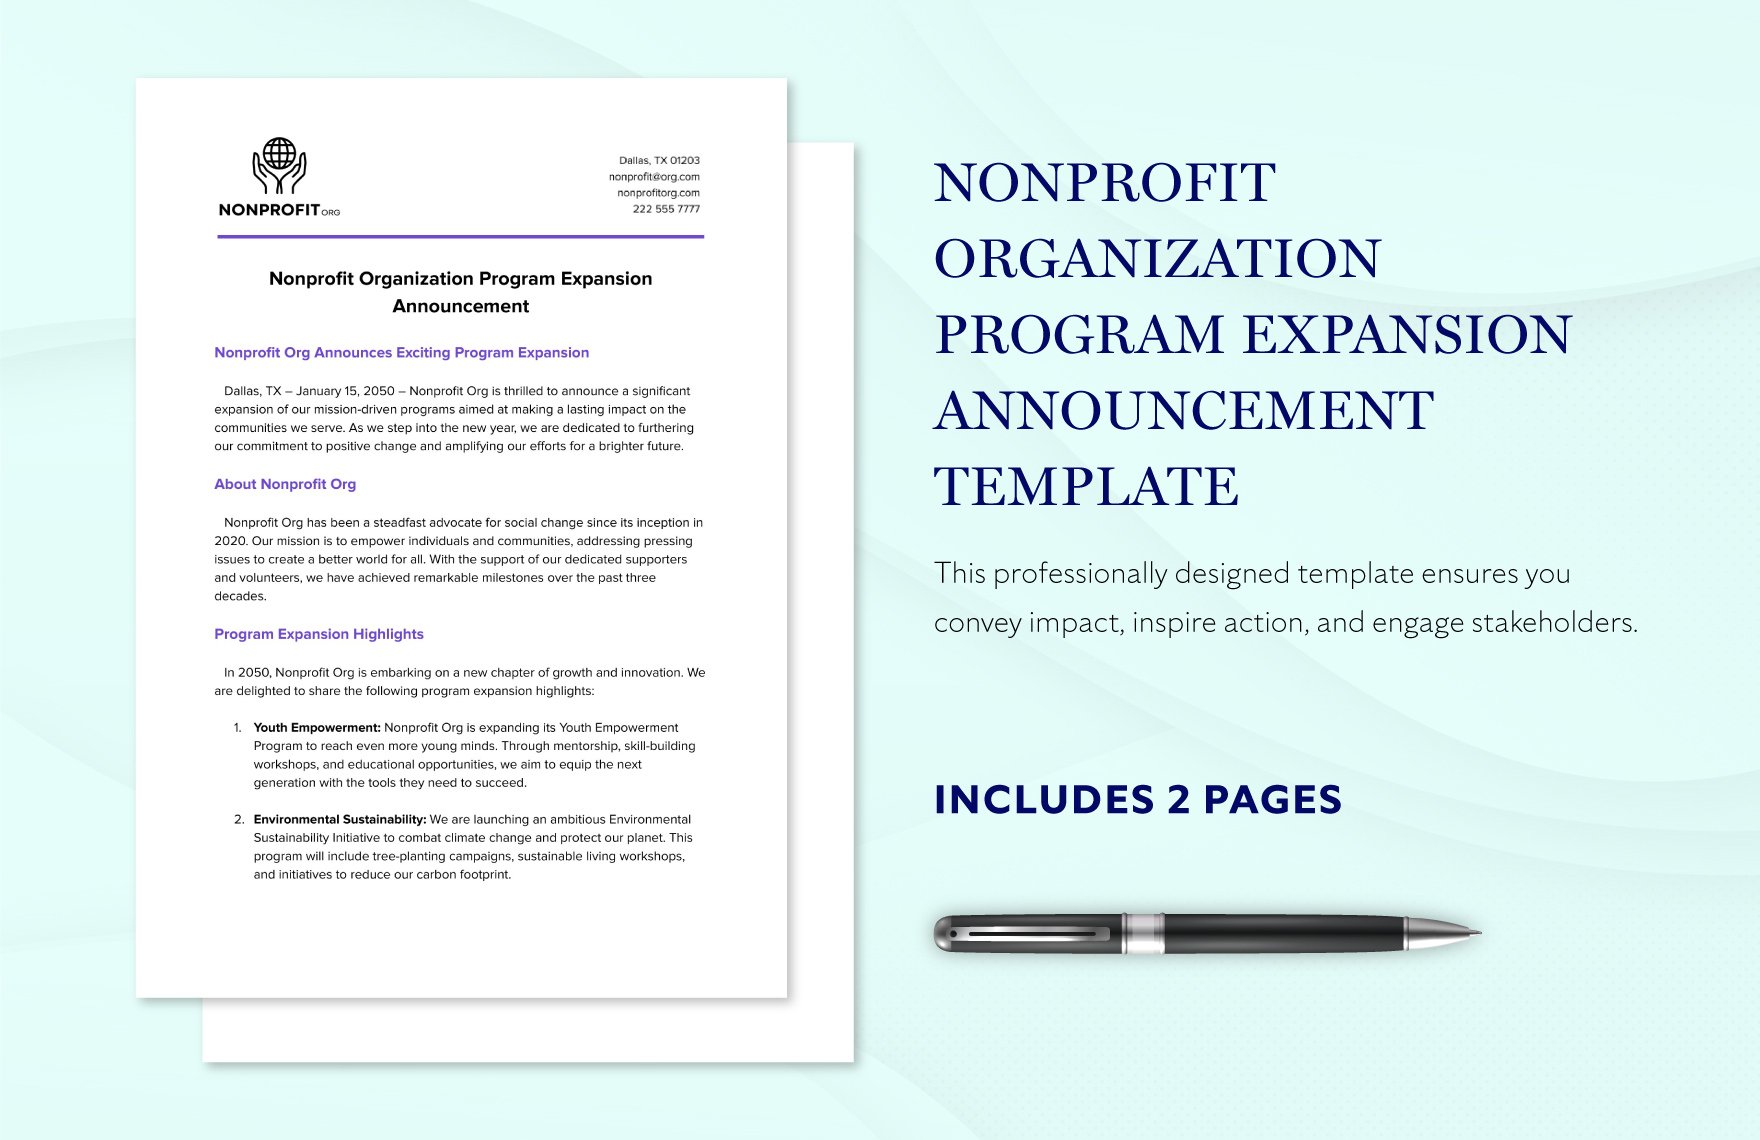 Nonprofit Organization Program Expansion Announcement Template